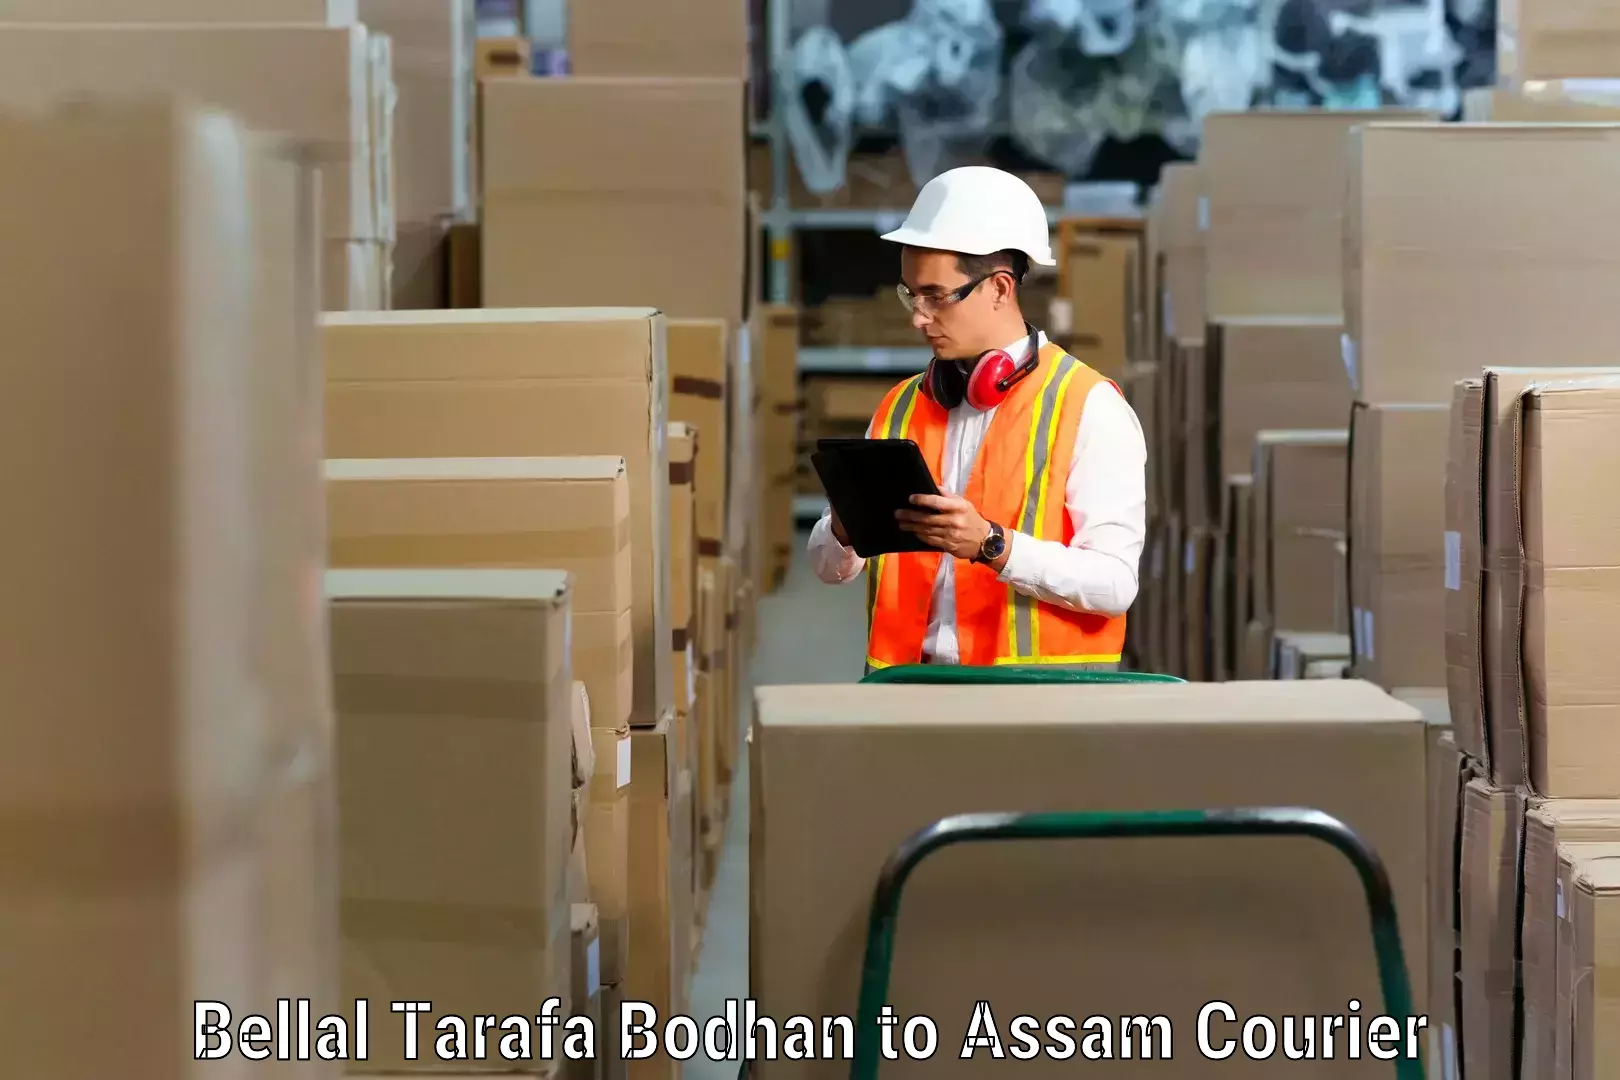 Furniture transport specialists Bellal Tarafa Bodhan to Lala Assam